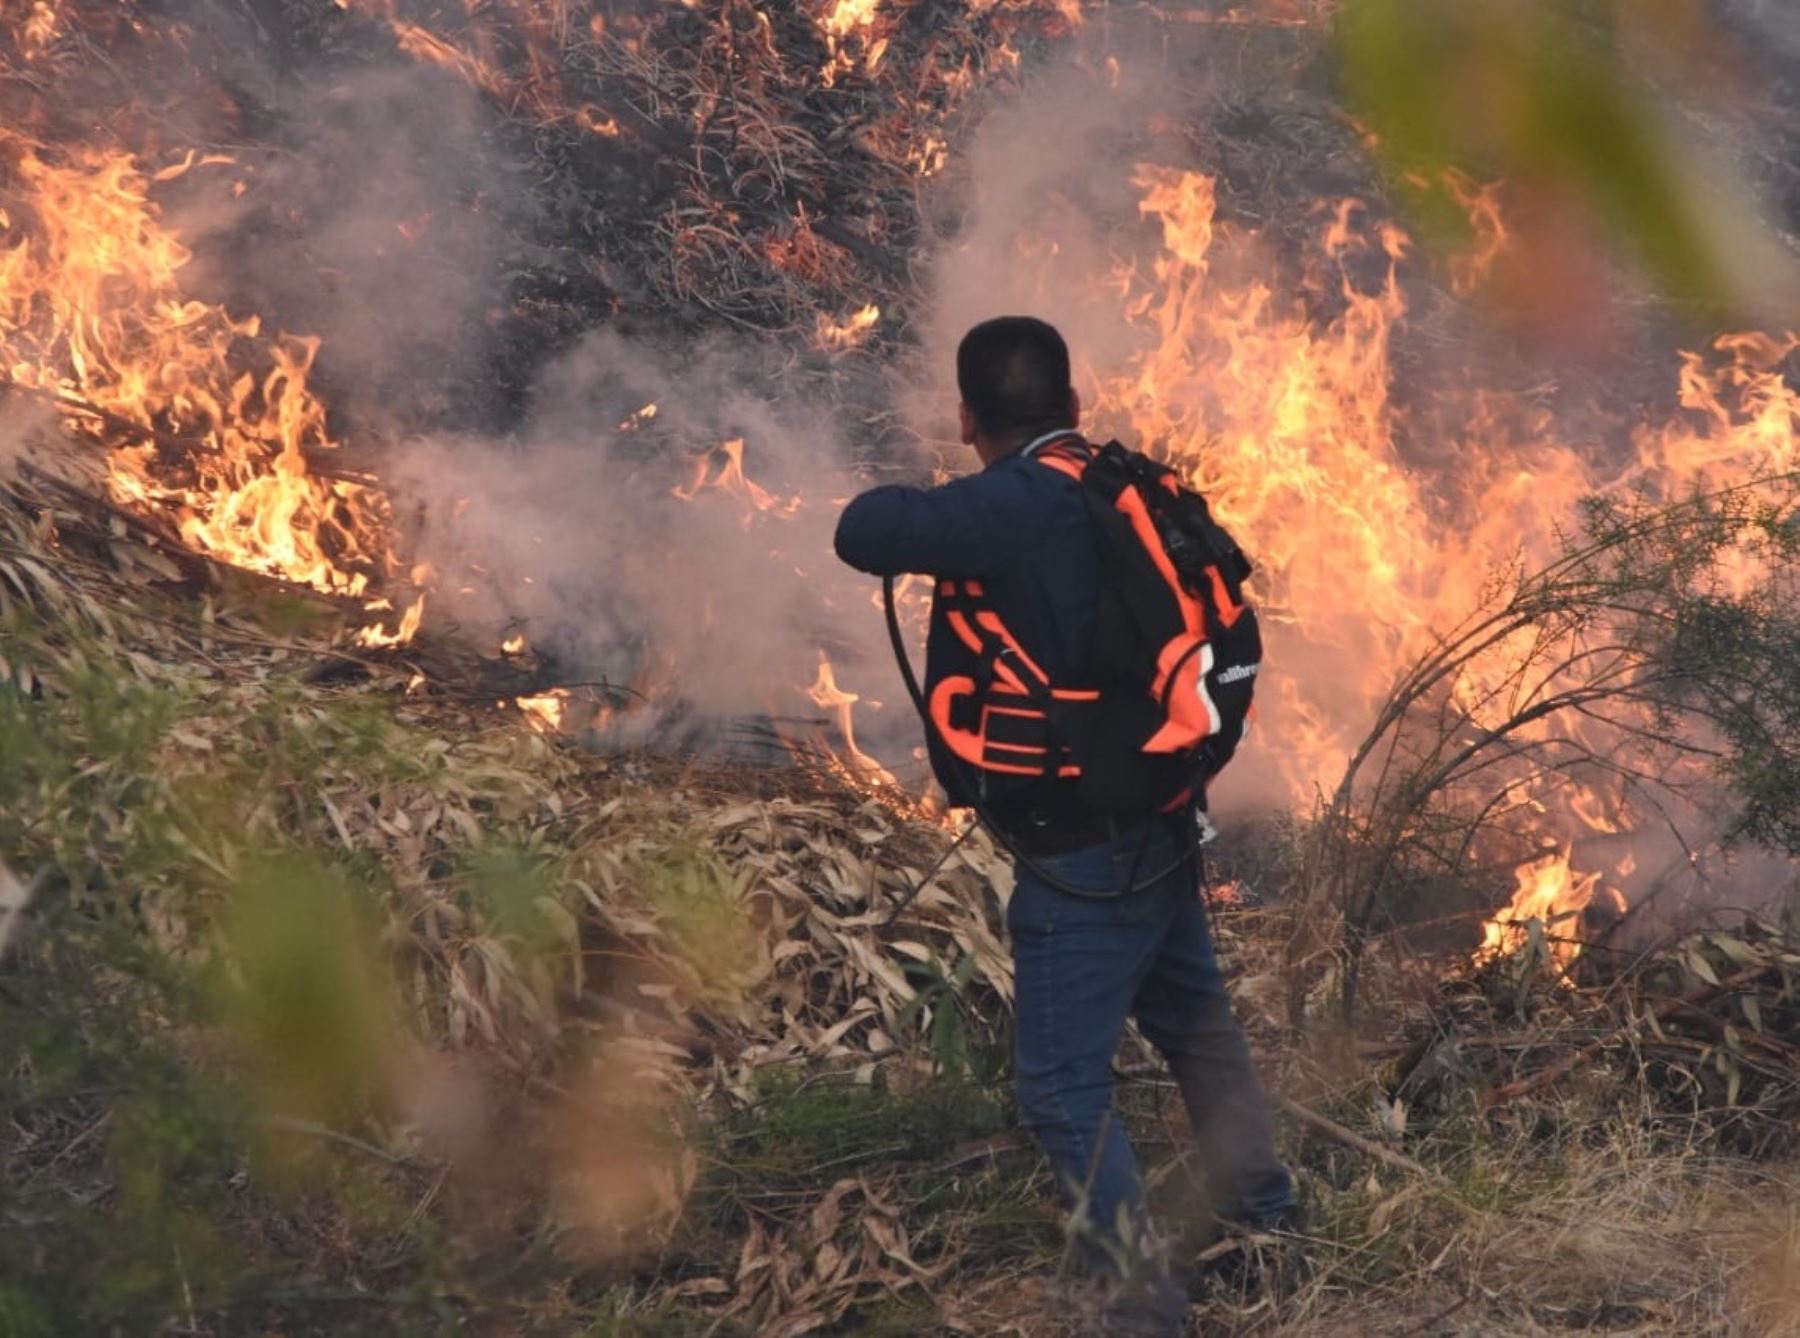 Más de 7,100 incendios forestales se han registrado en el país en lo que va del año, reveló el Ministerio del Ambiente. ANDINA/Difusión